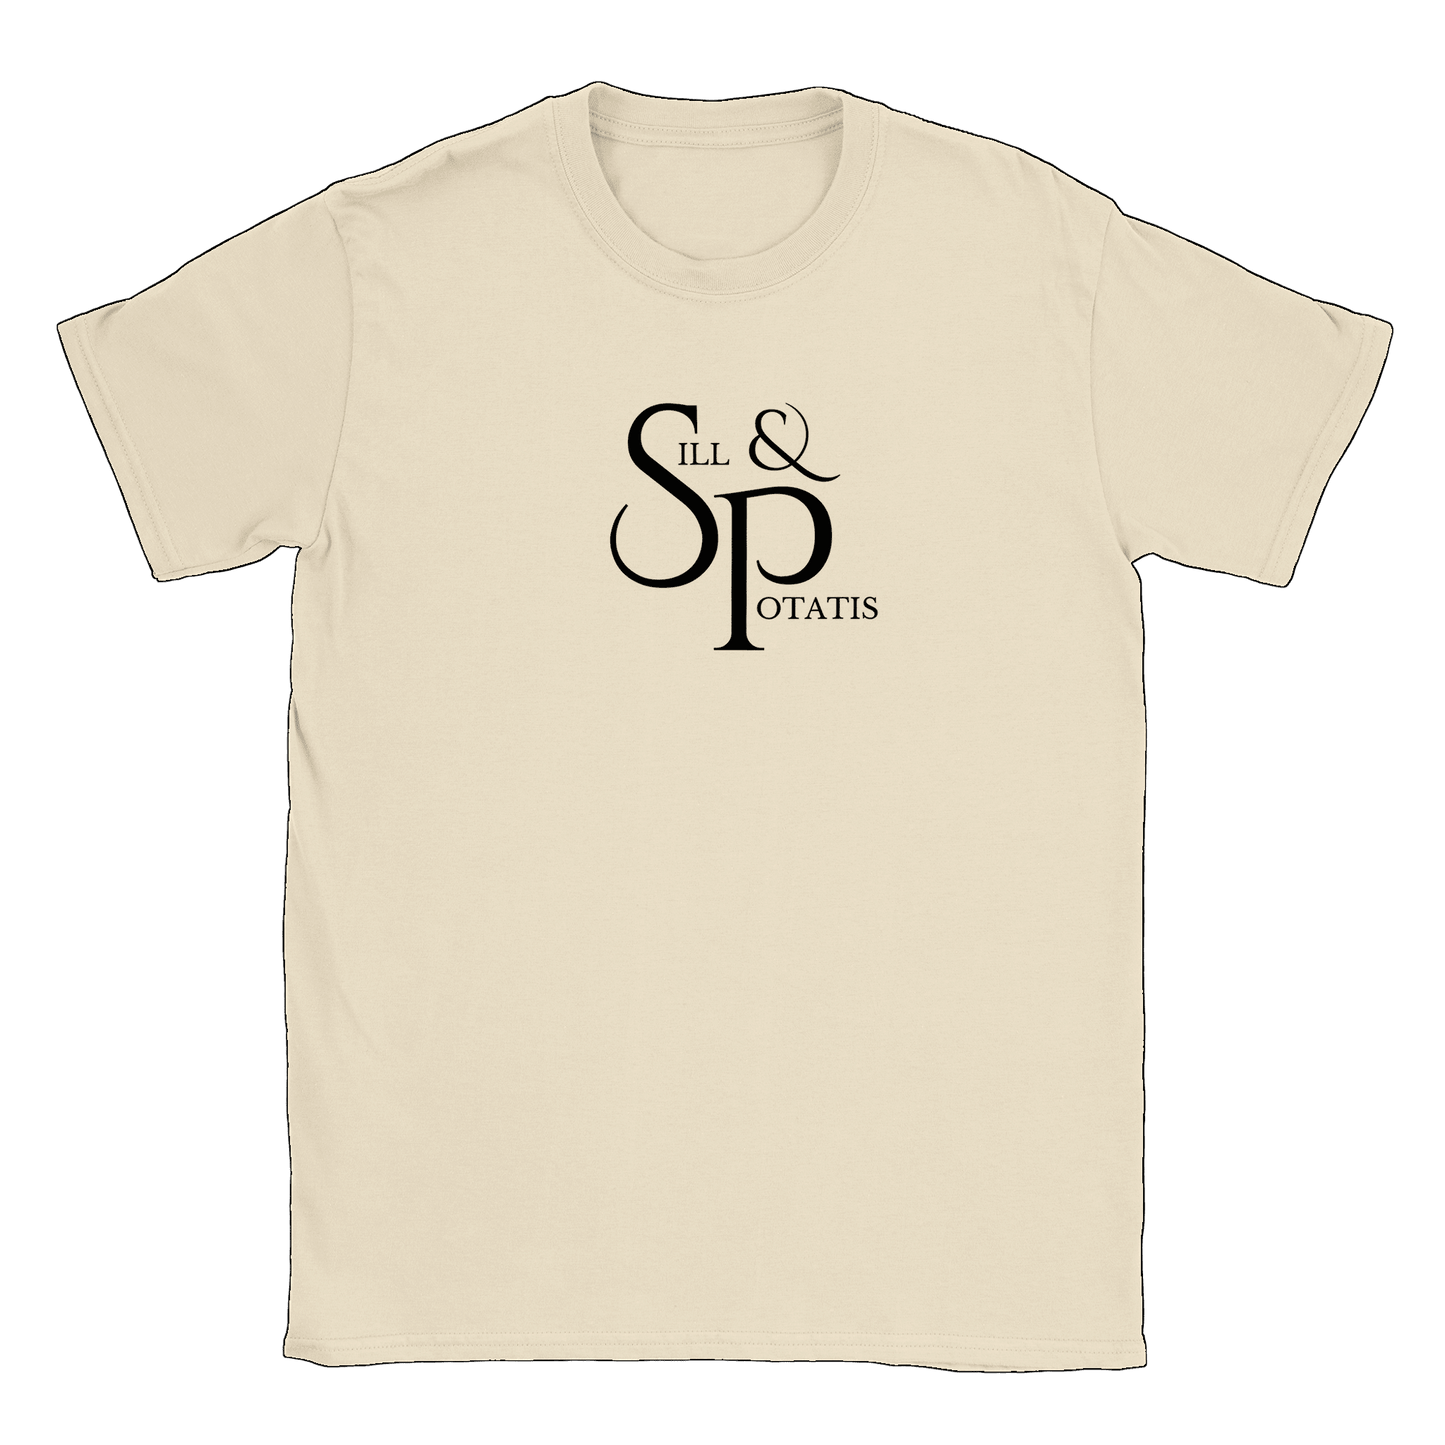 Sill och Potatis - T-shirt Natural